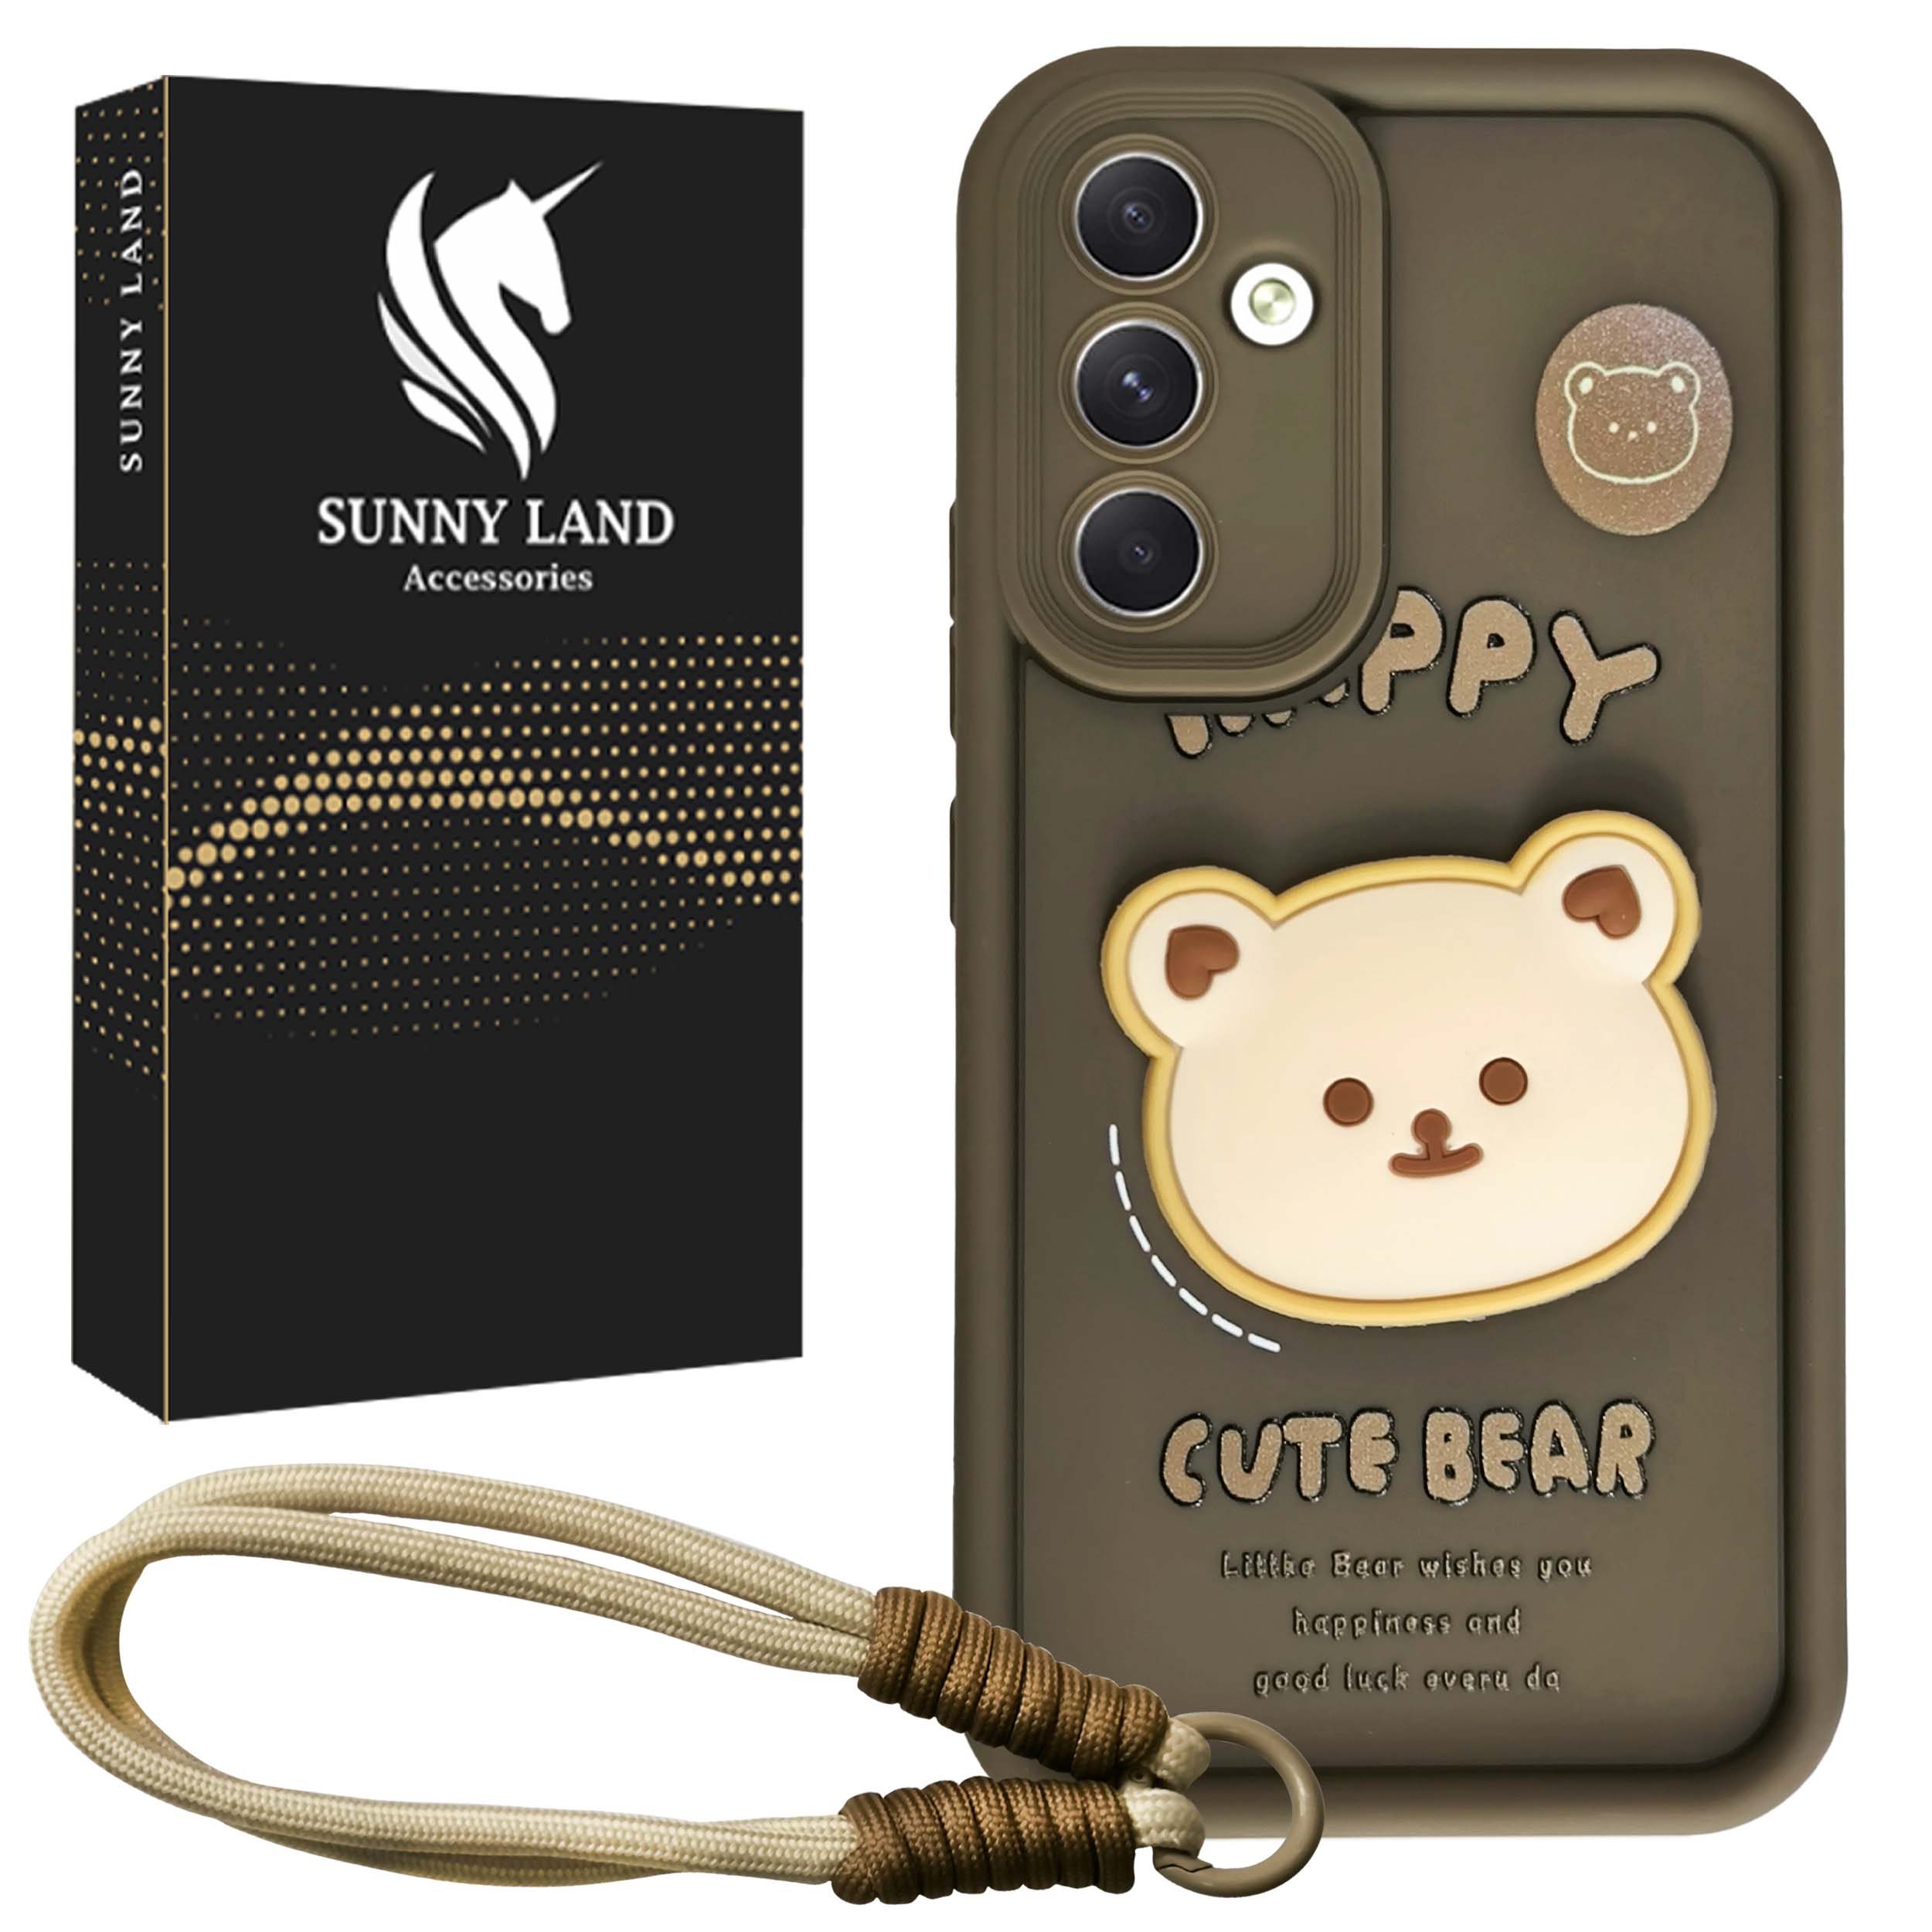 کاور سانی لند مدل Bear مناسب برای گوشی موبایل سامسونگ Galaxy A54 به همراه بندآویز